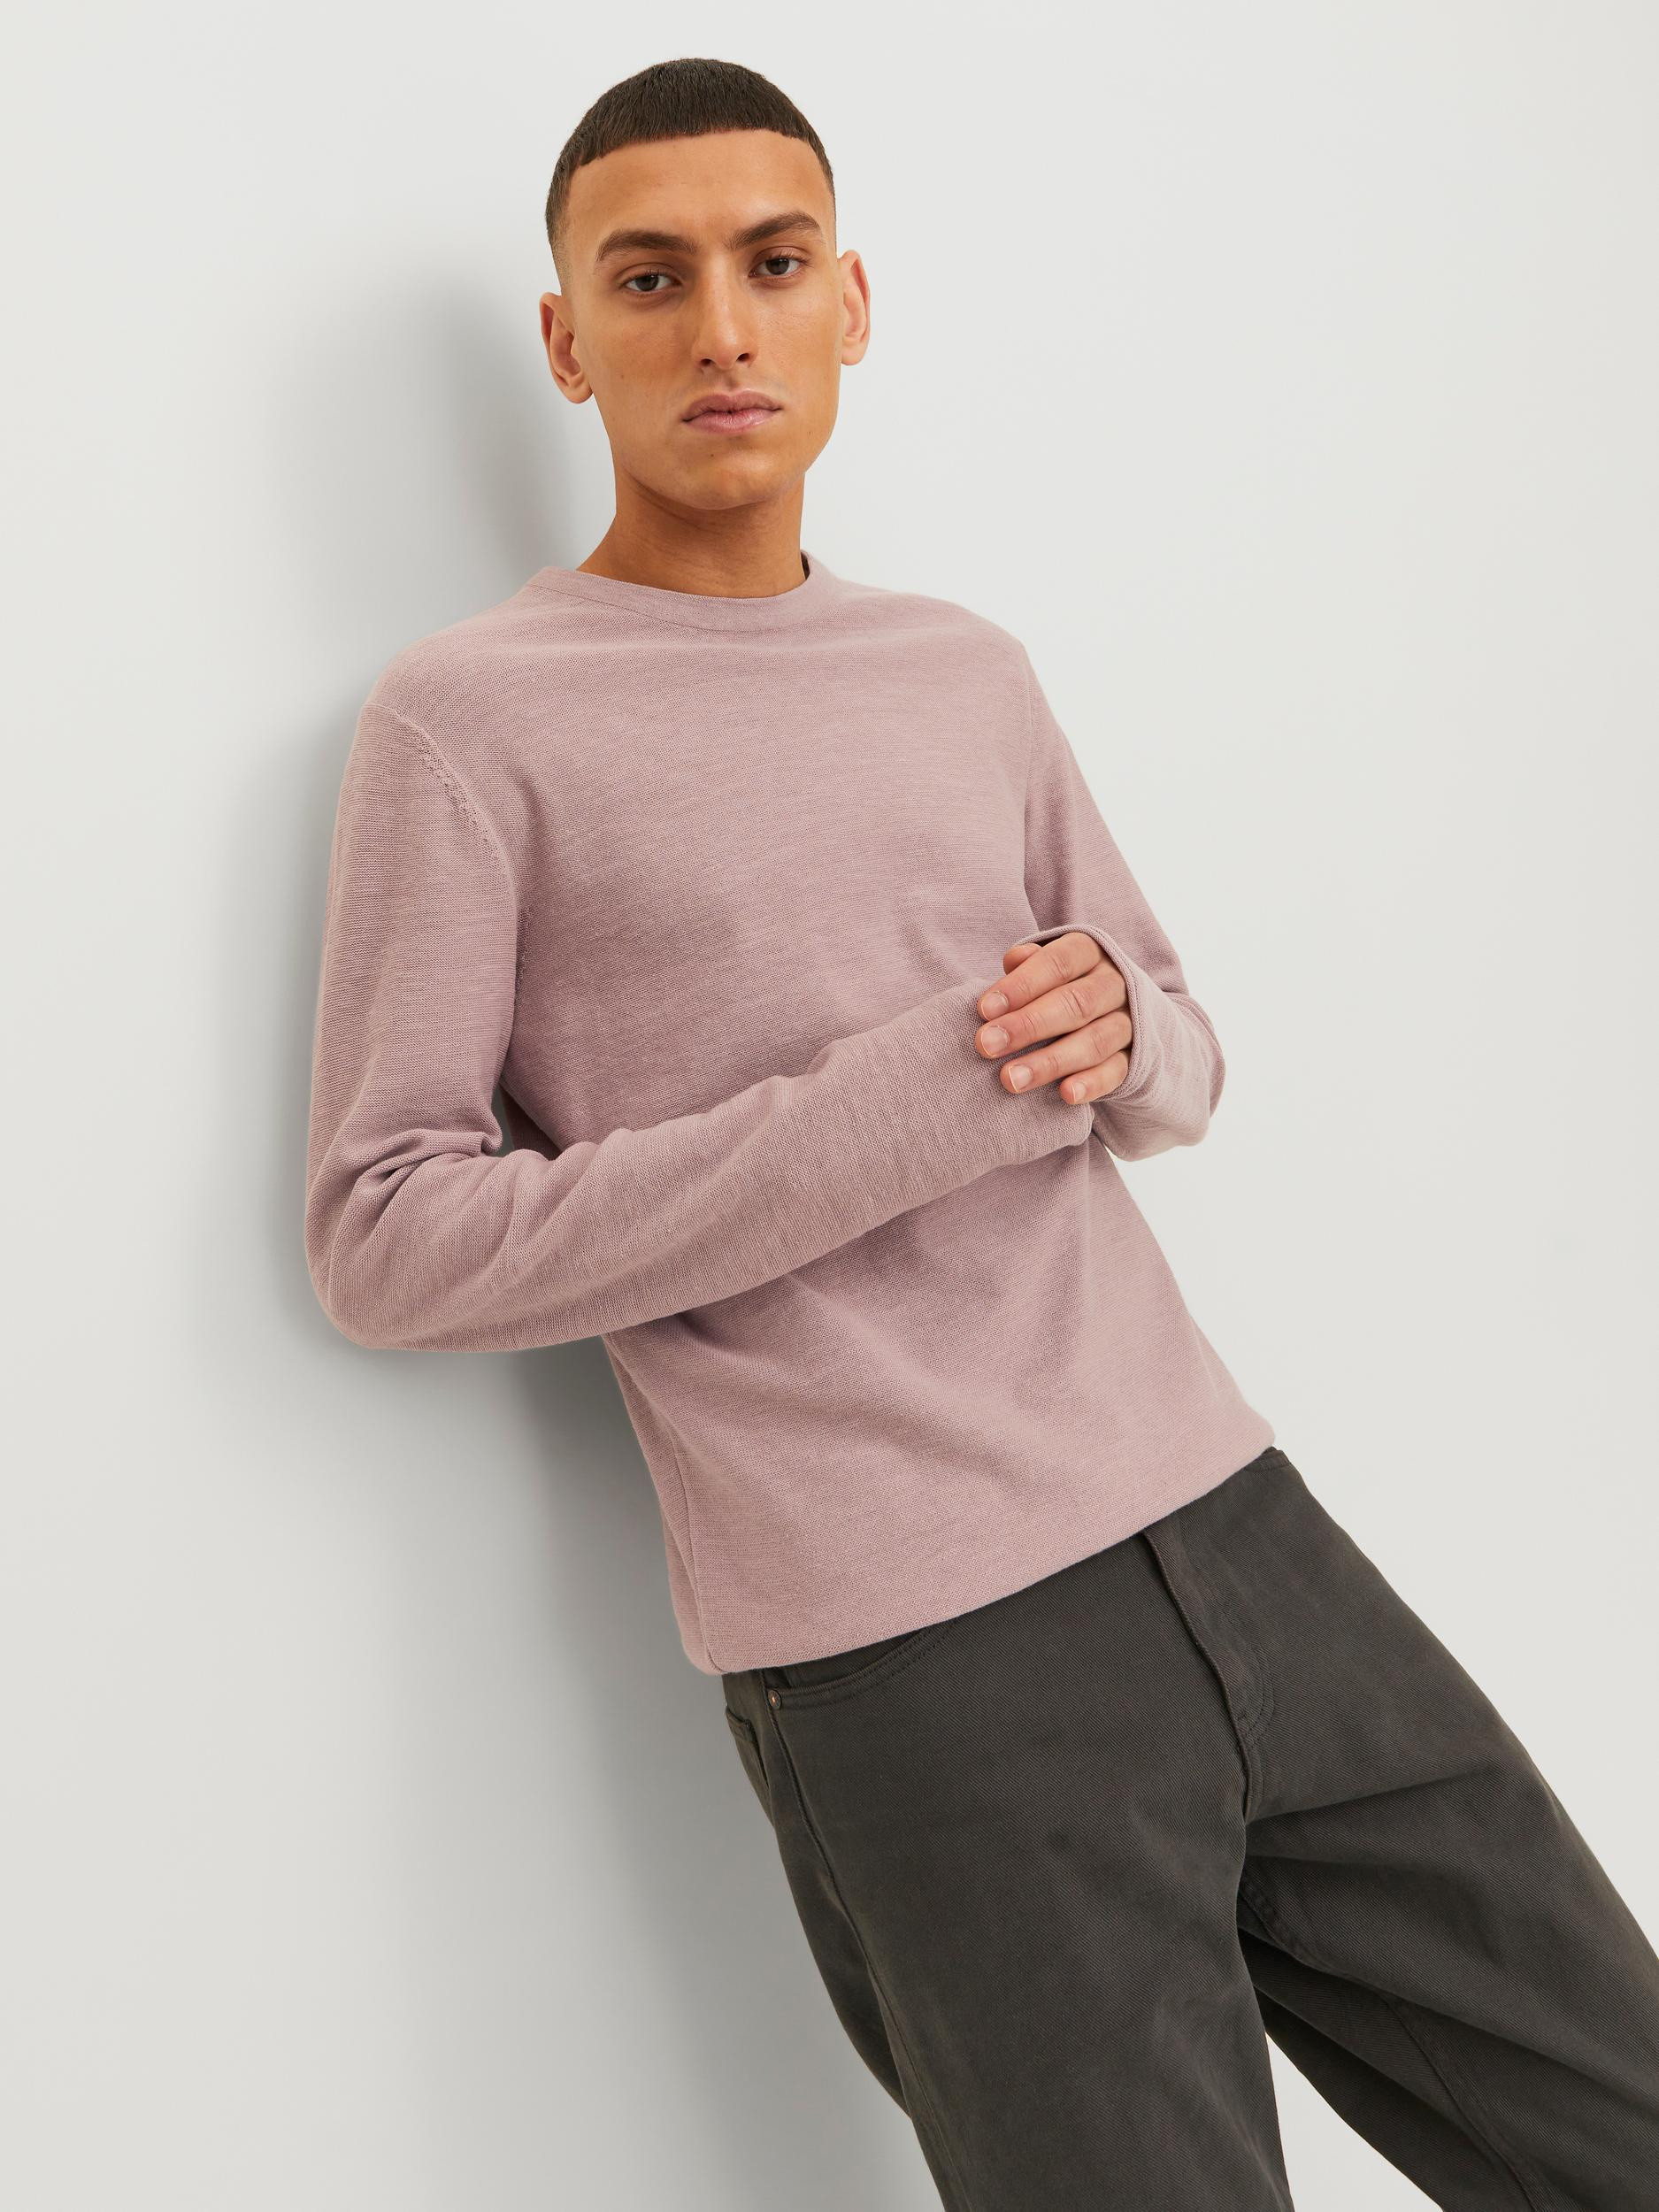 Jack & Jones - Linen blend pullover, Antique Pink, large image number 4